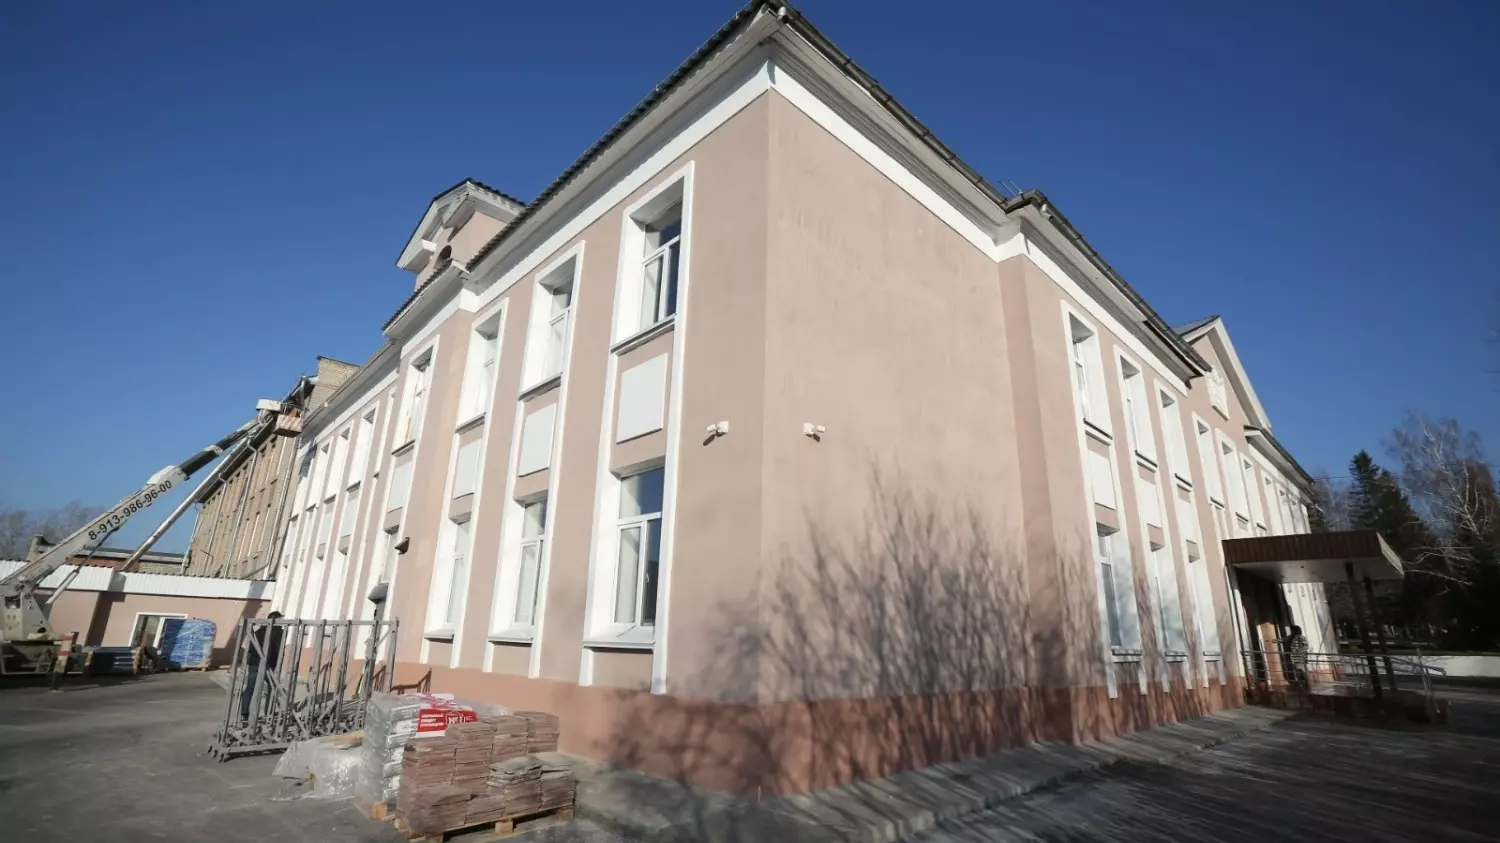  Школа №146 в Первомайском районе Новосибирска отремонтирована по программе капитального ремонта образовательных учреждений.